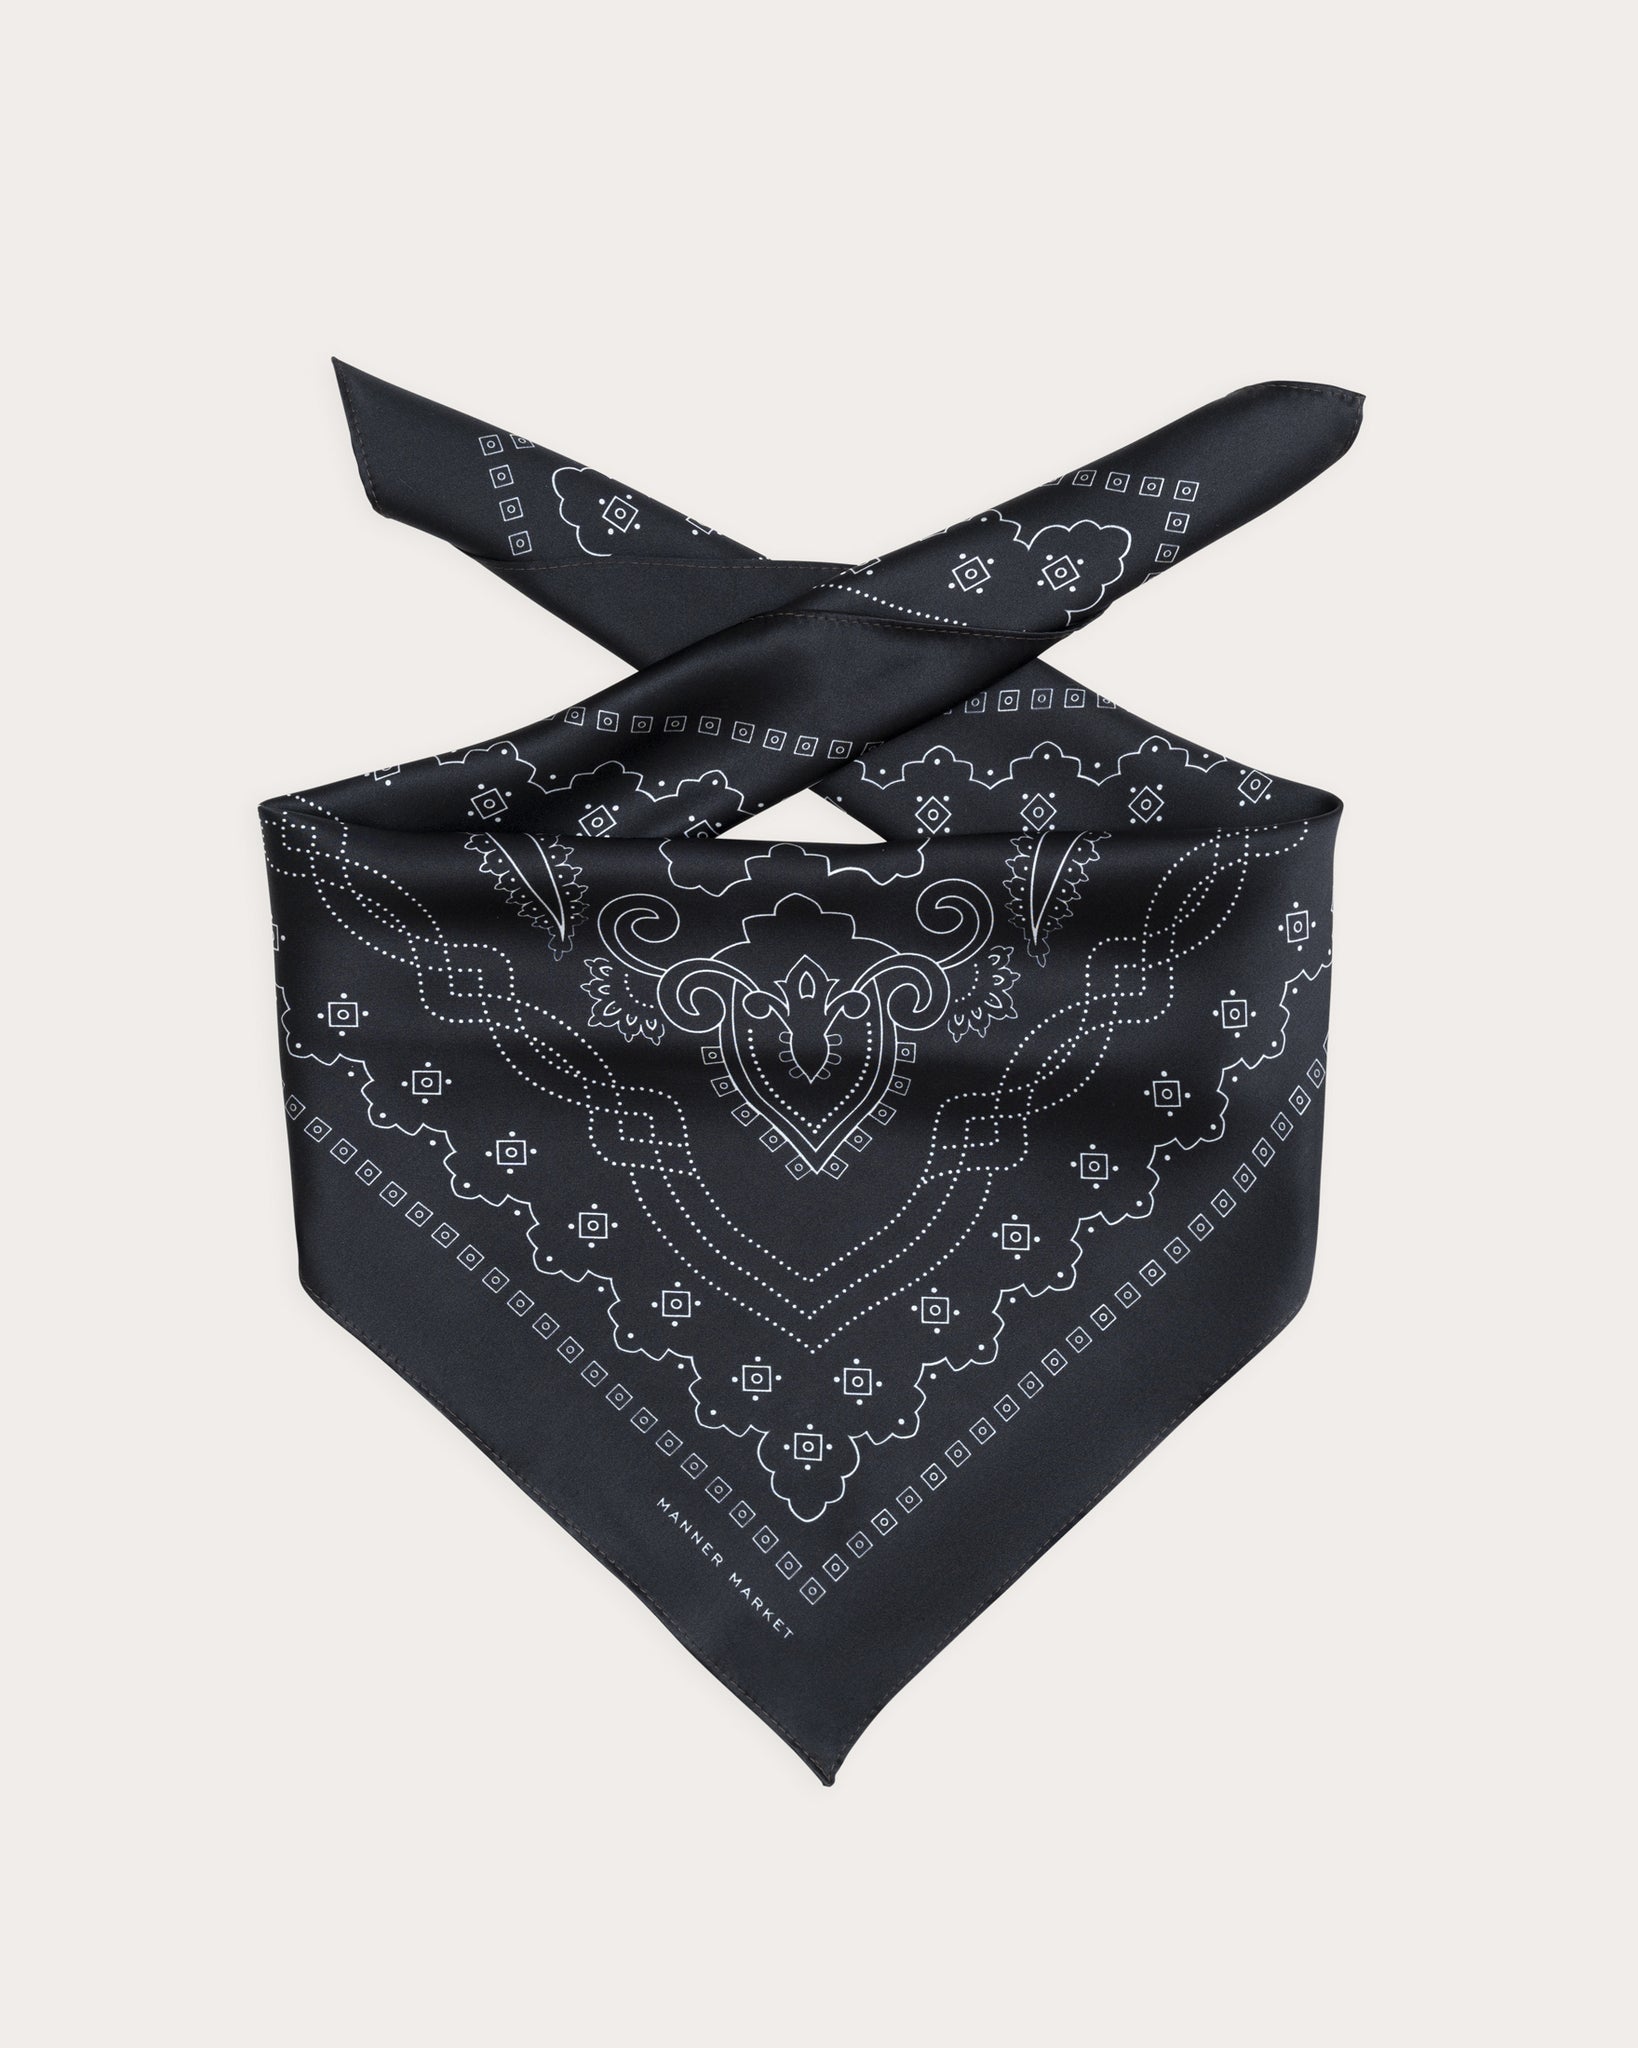 Manner Market - The essential silk scarf